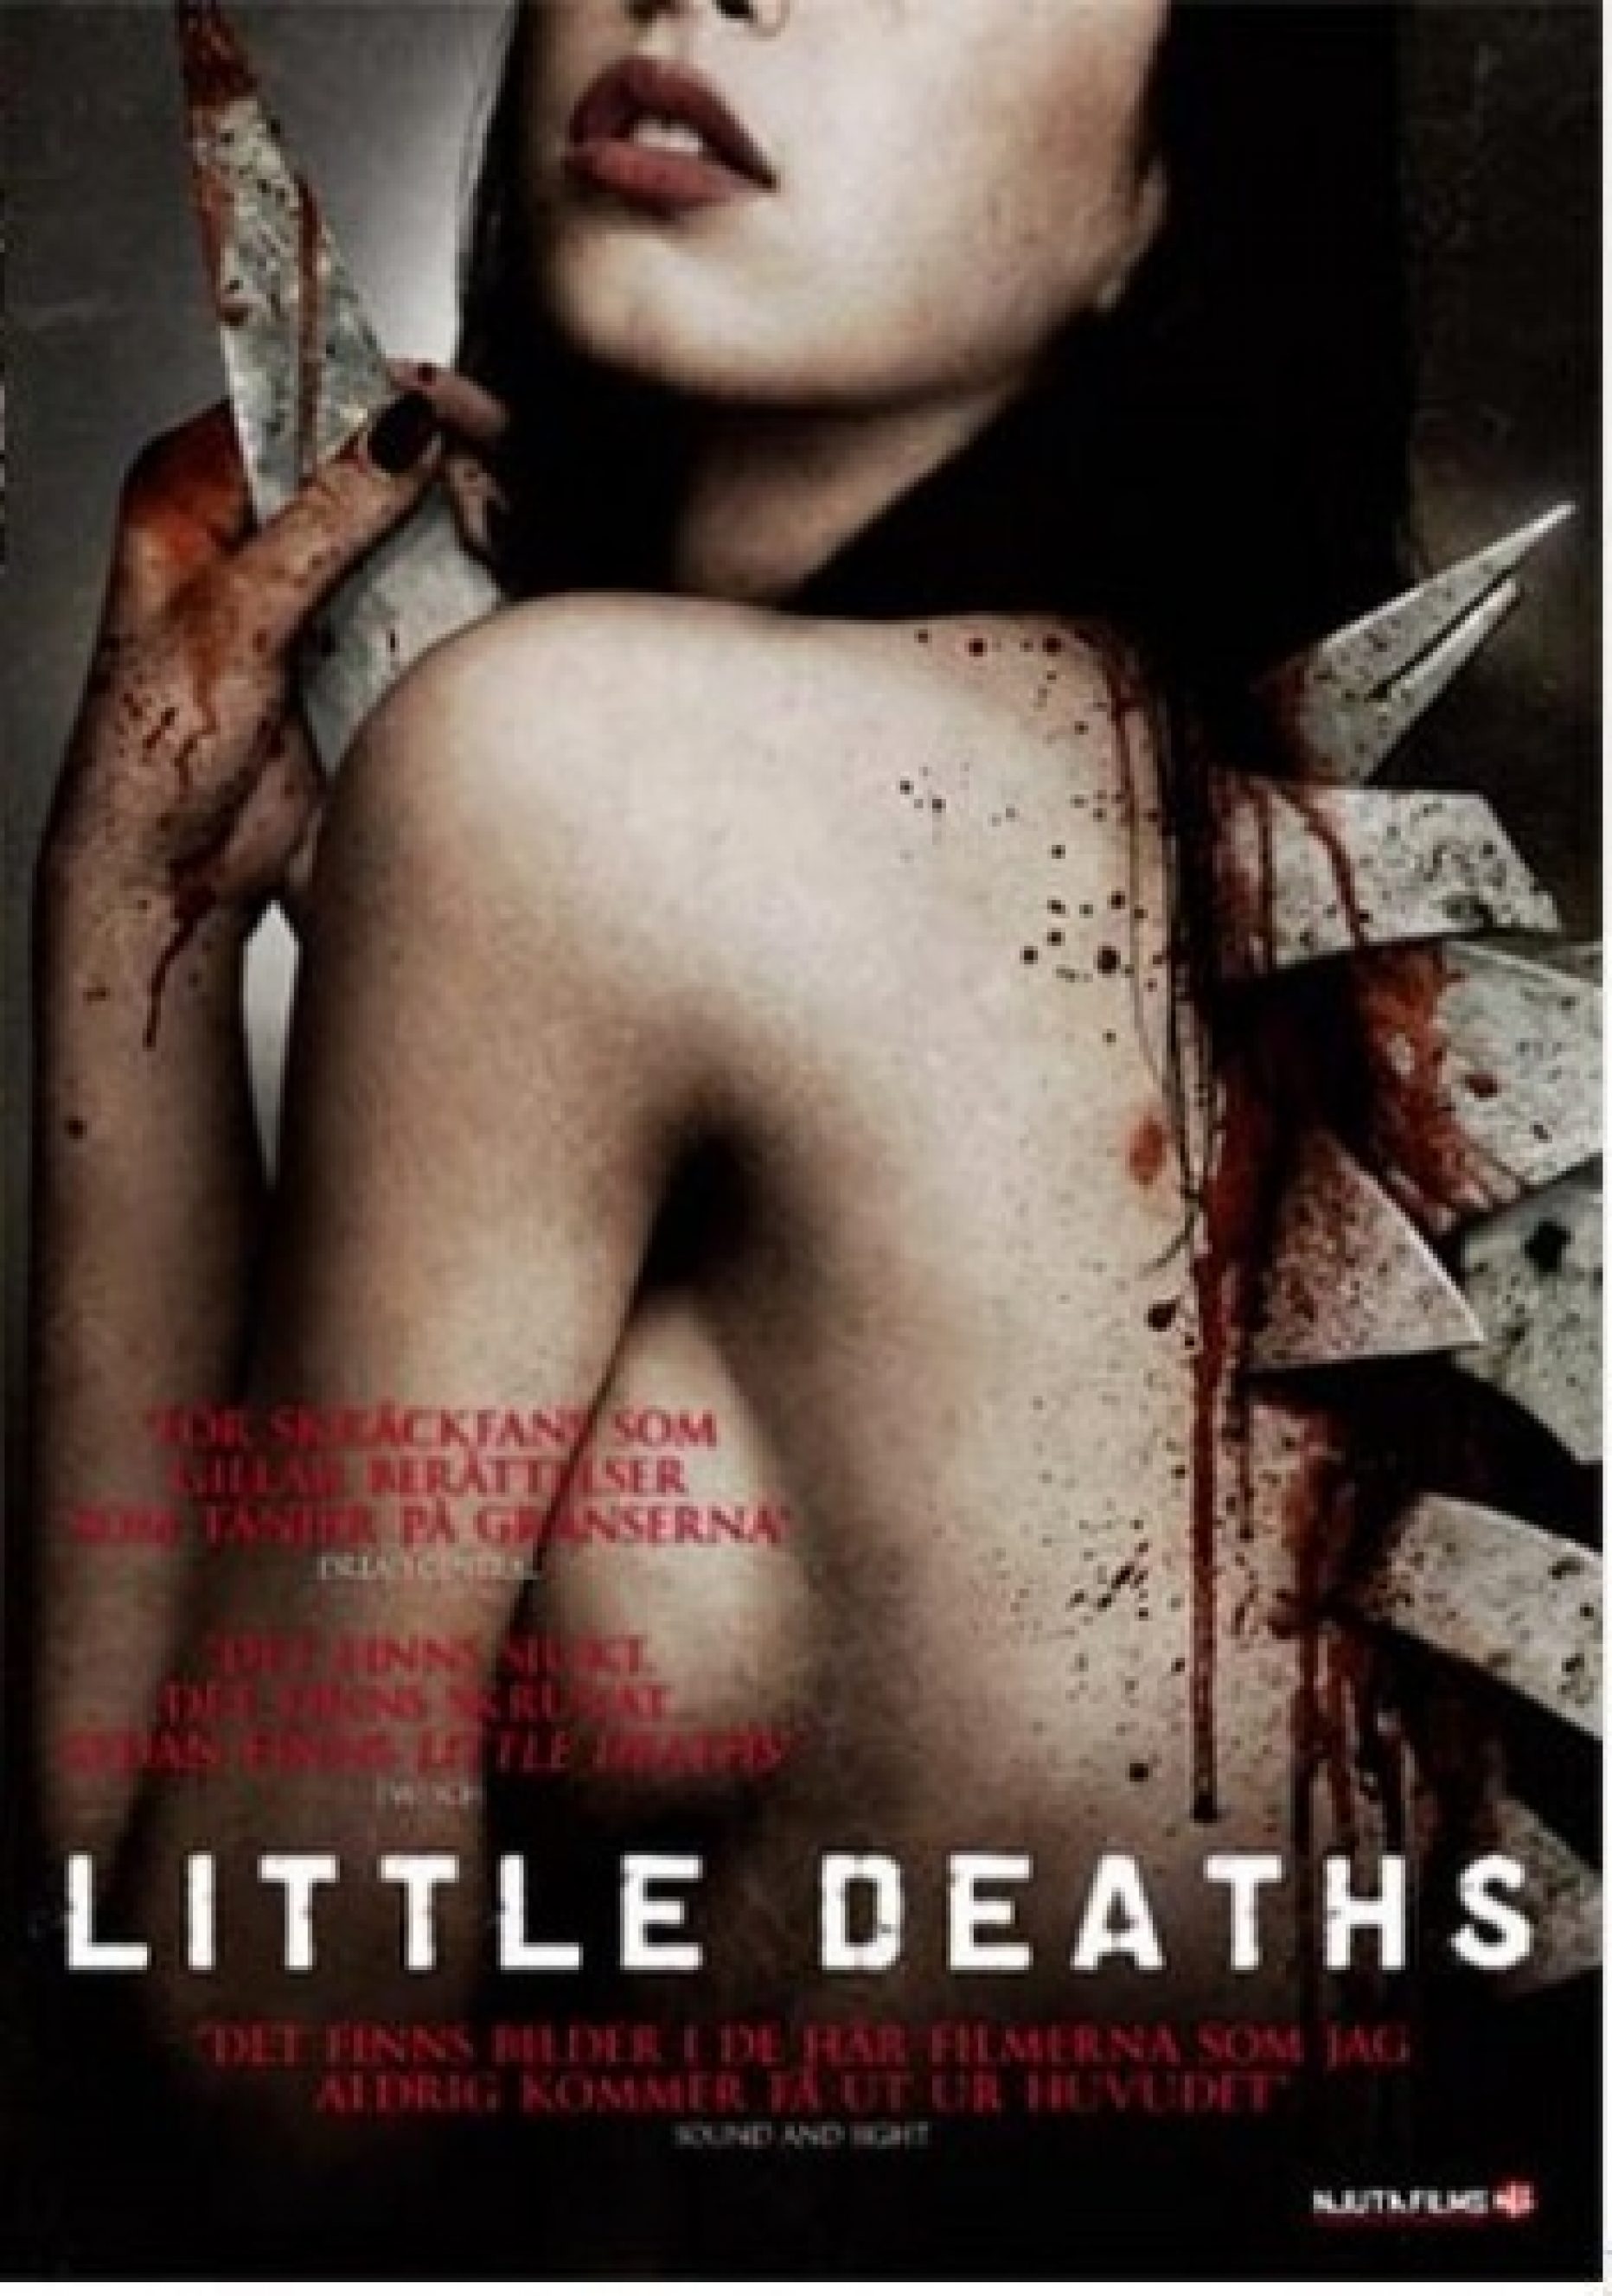 Little Deaths (Hogan, Parkinson & Rumley, 2012)